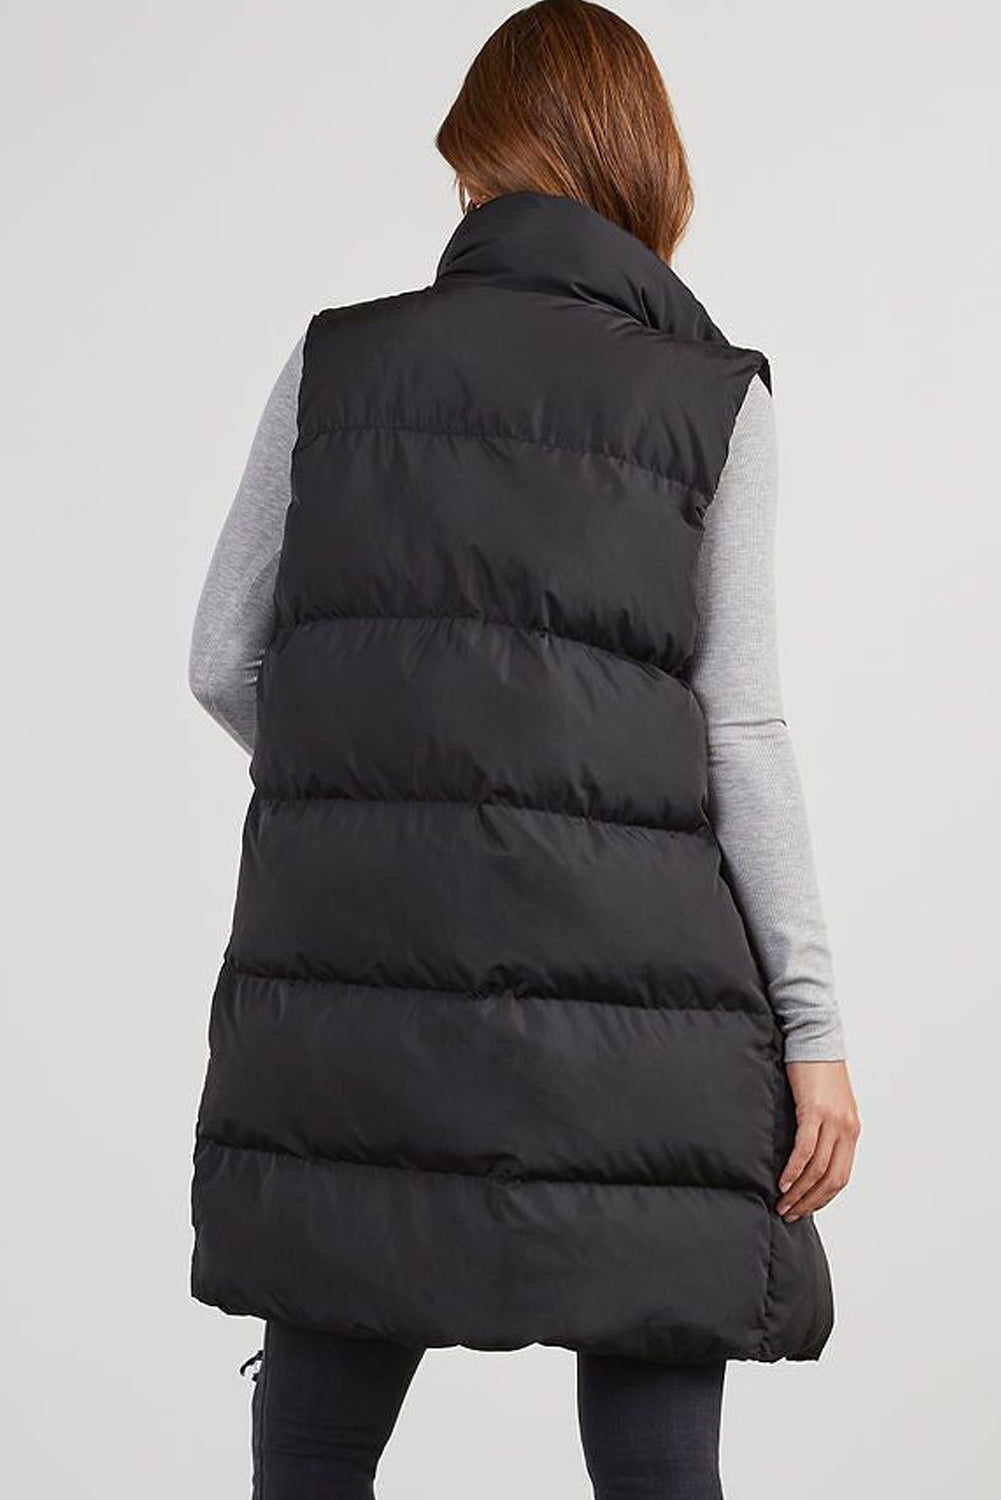 Black Solid Color Puffer Zip Up Pocketed Vest Coat